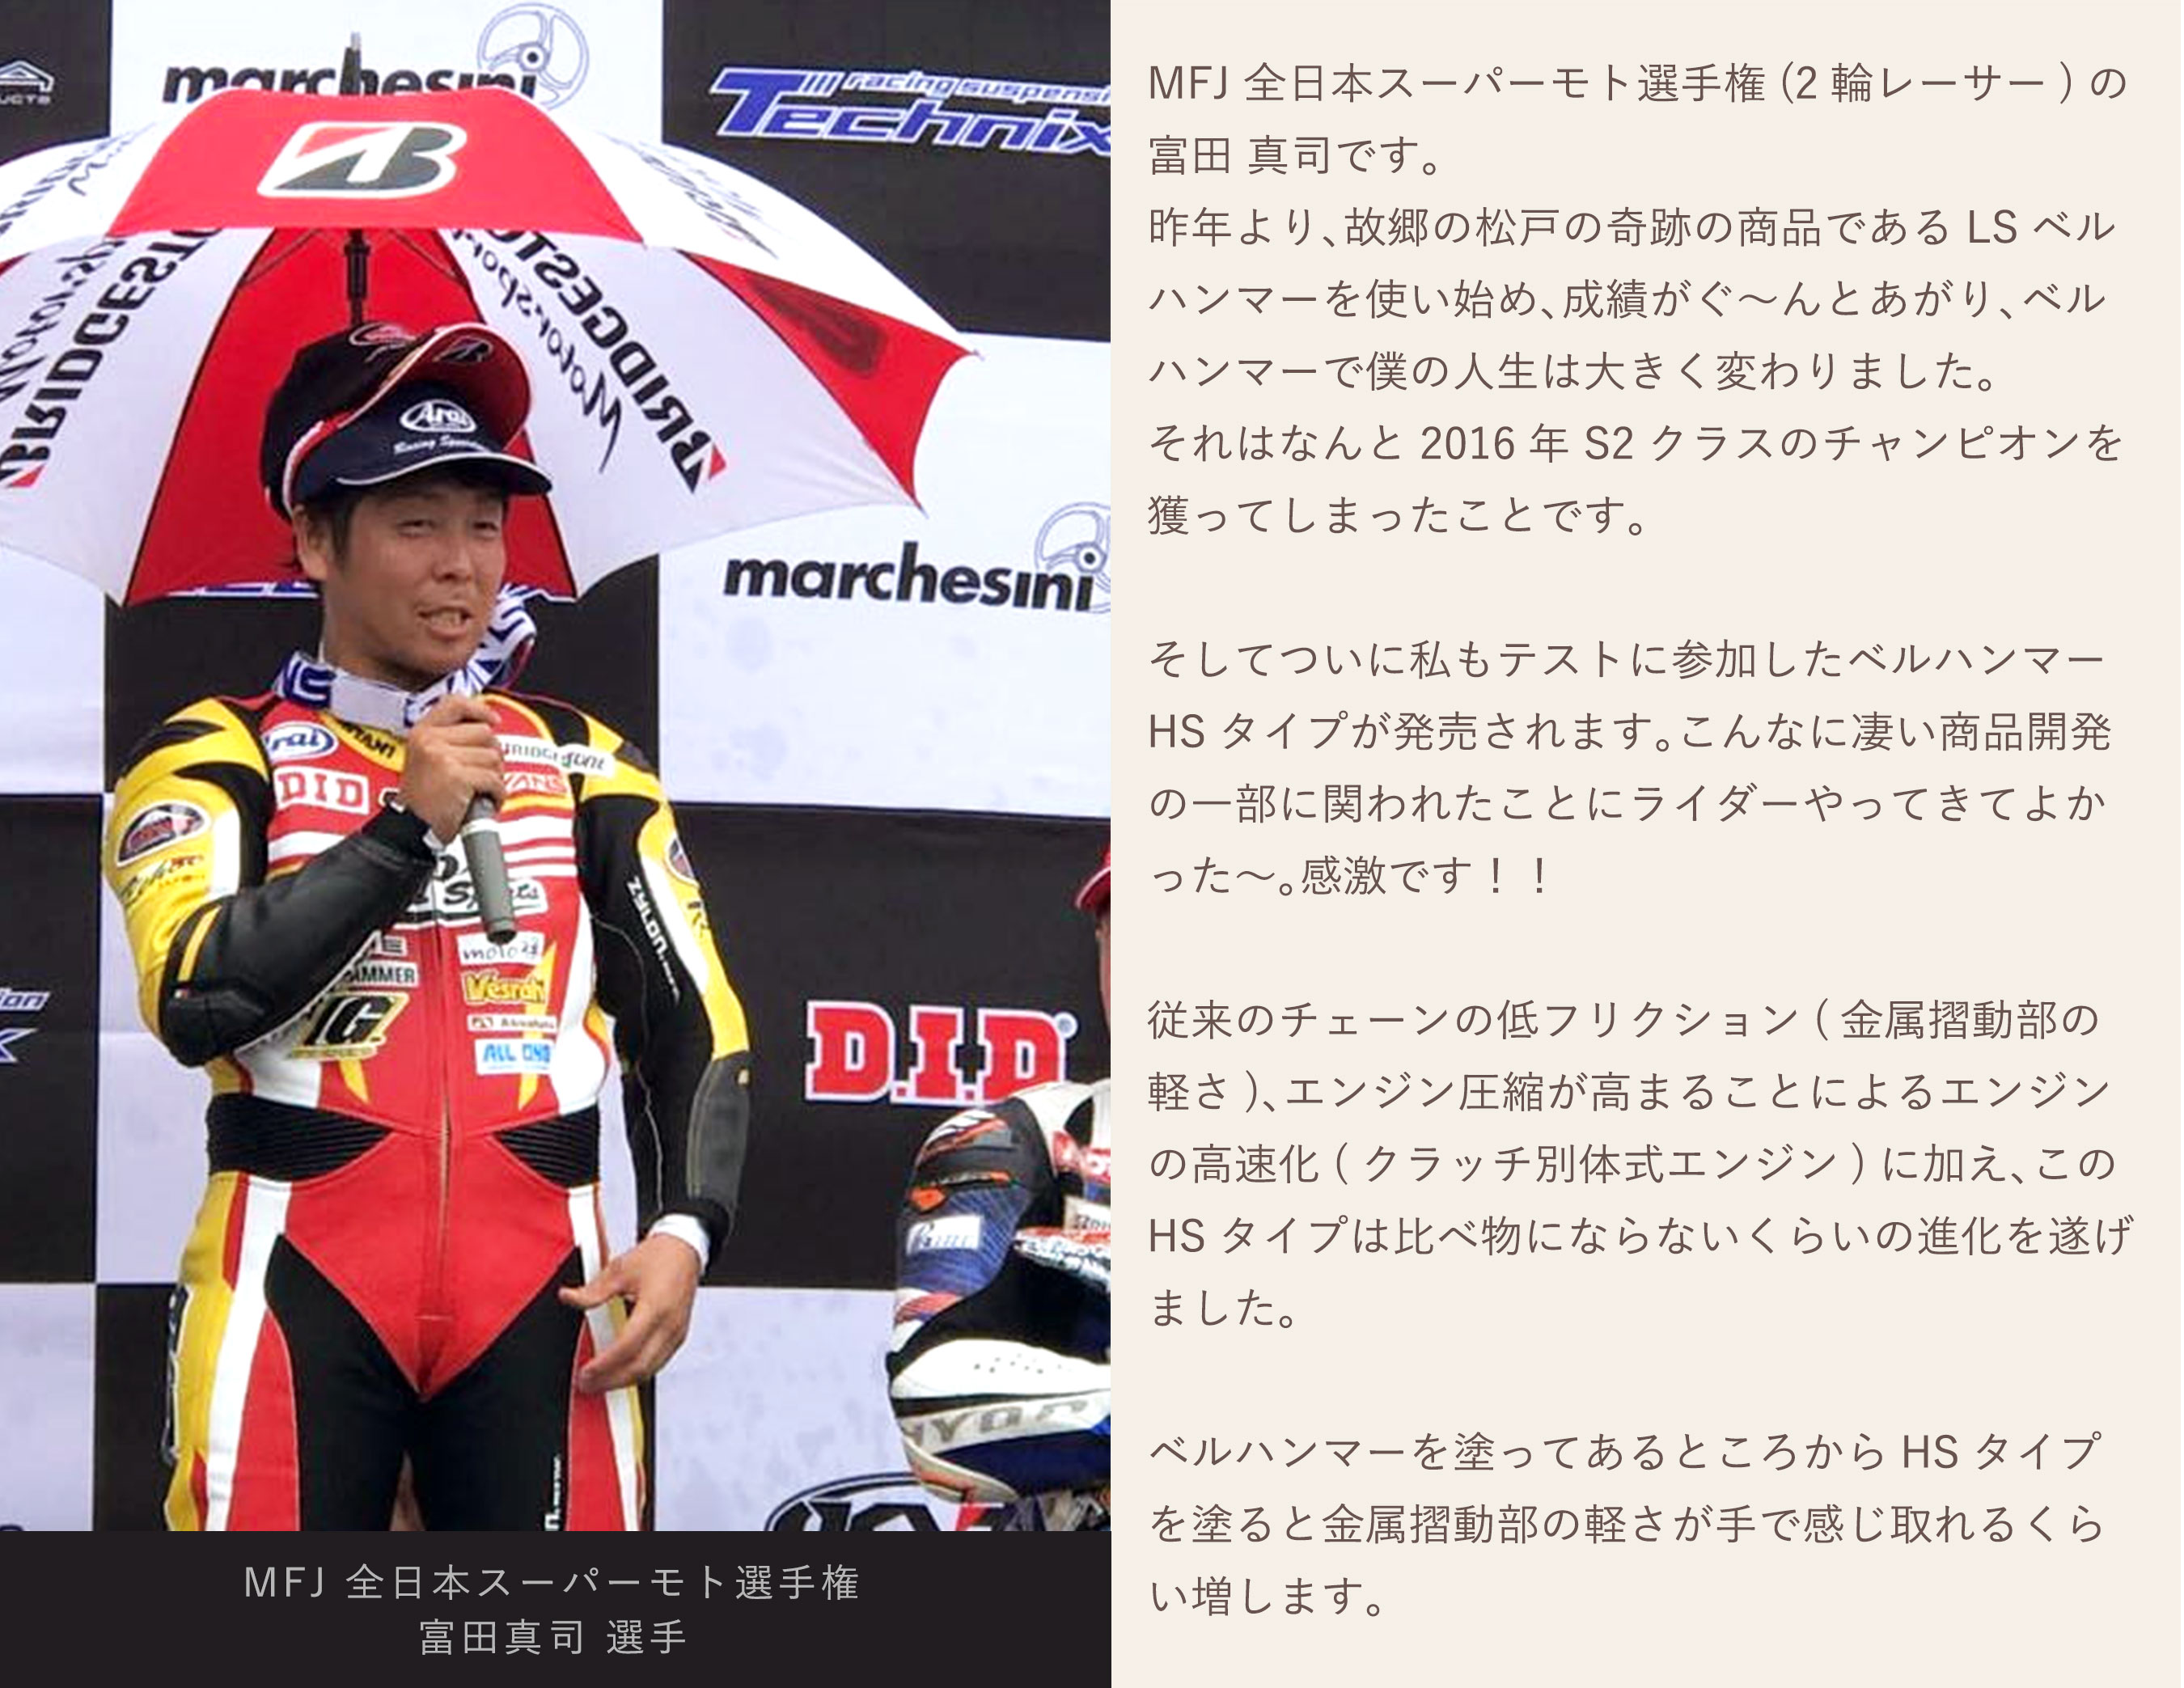 MFJ全日本スーパーモト選手権富田真司選手のメッセージ